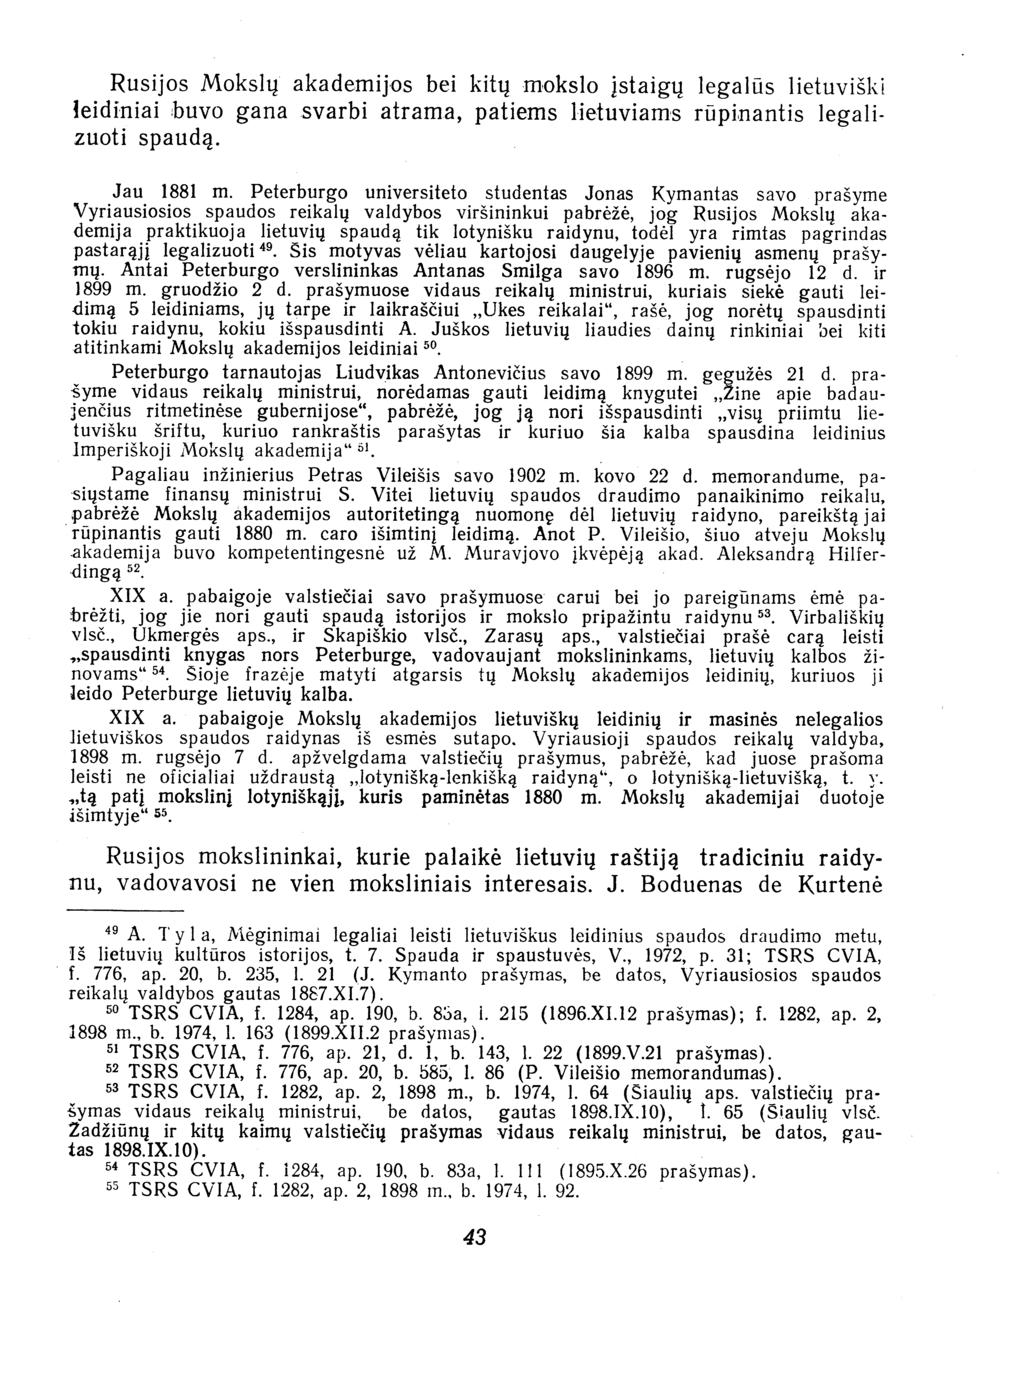 Rusijos Mokslng akademijios bei kitng miokslo!staigu legaltis lietuviski leidiniai buvo gana svarbi atrama, patiems lietuviams rtipinantis legalizuoti spauda. Jau 1881 in.